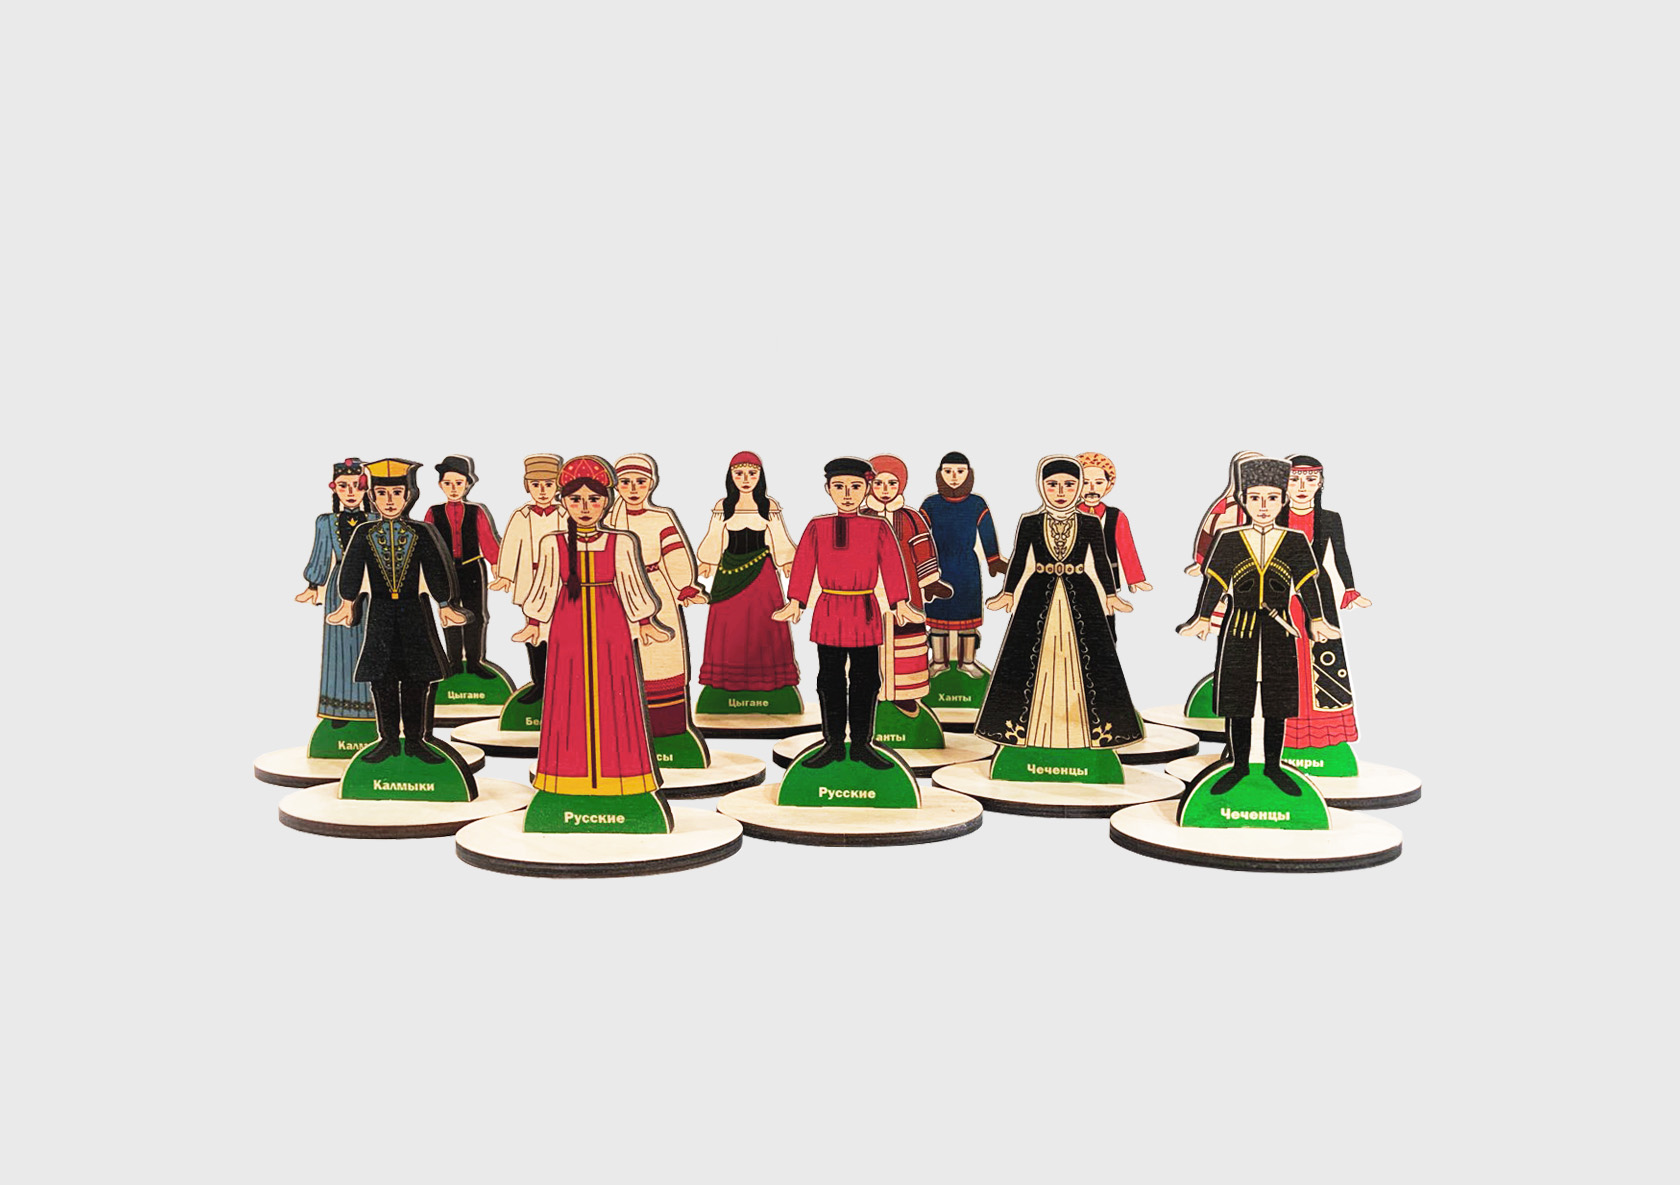 Народы России» коллекция деревянных фигурок в национальных костюмах RG462